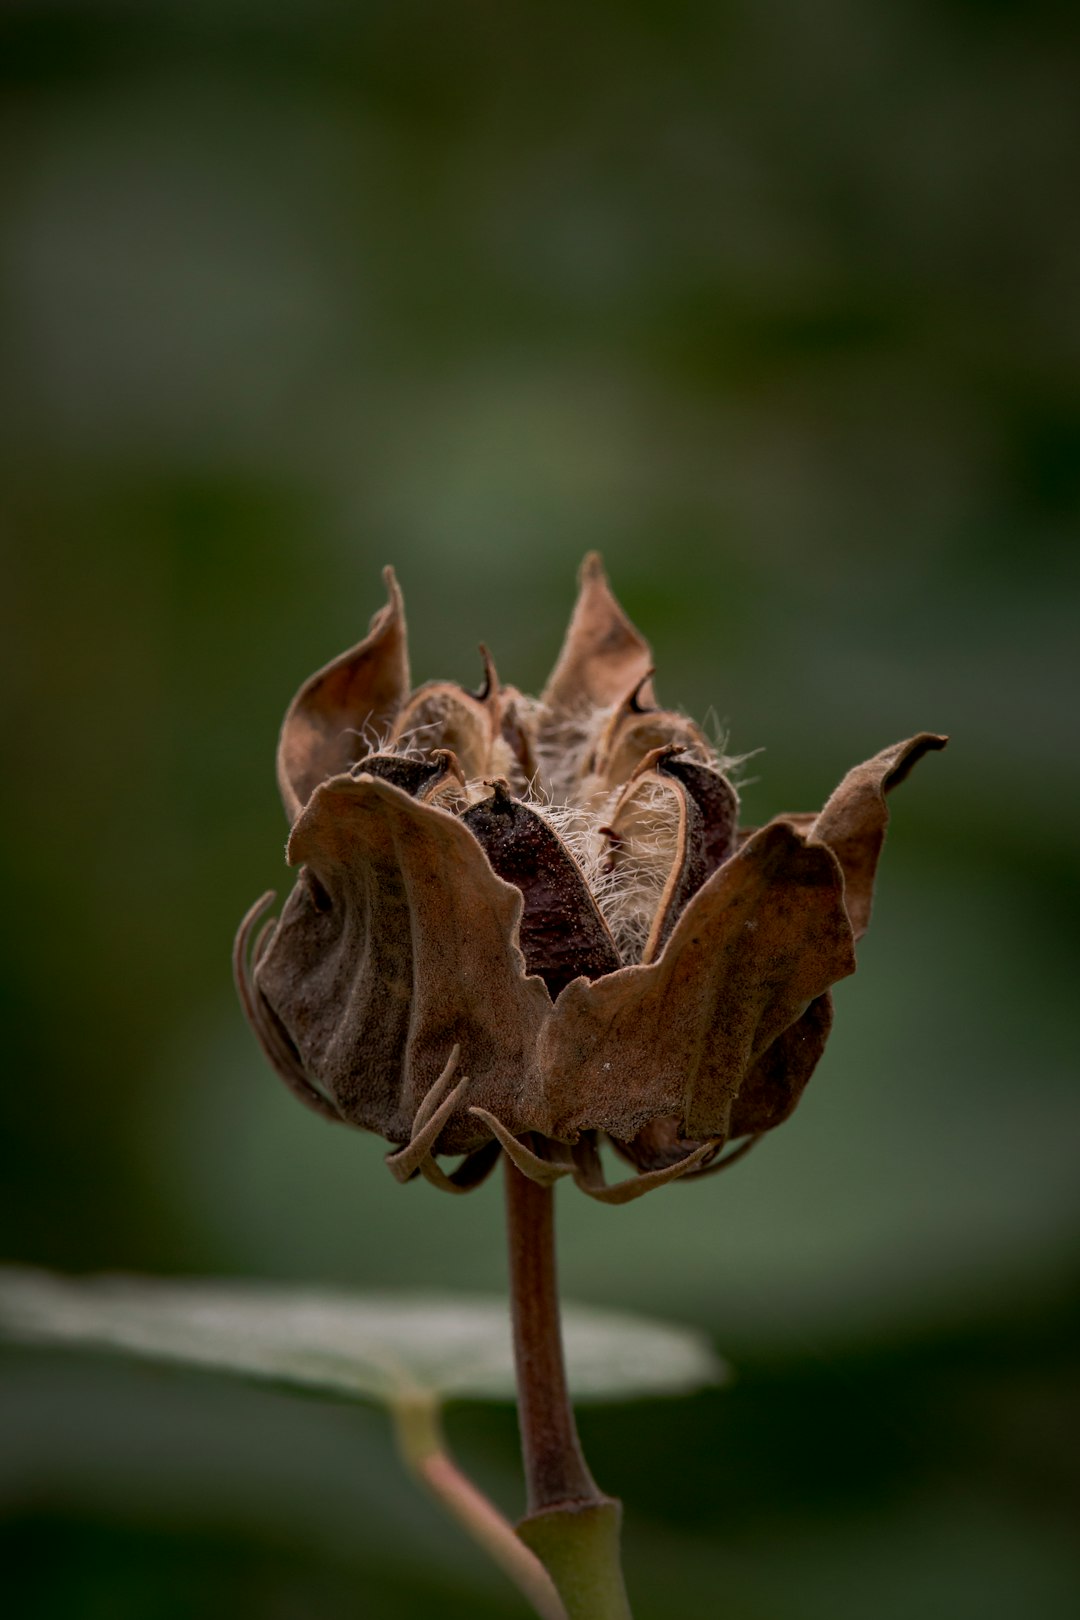 brown flower in tilt shift lens